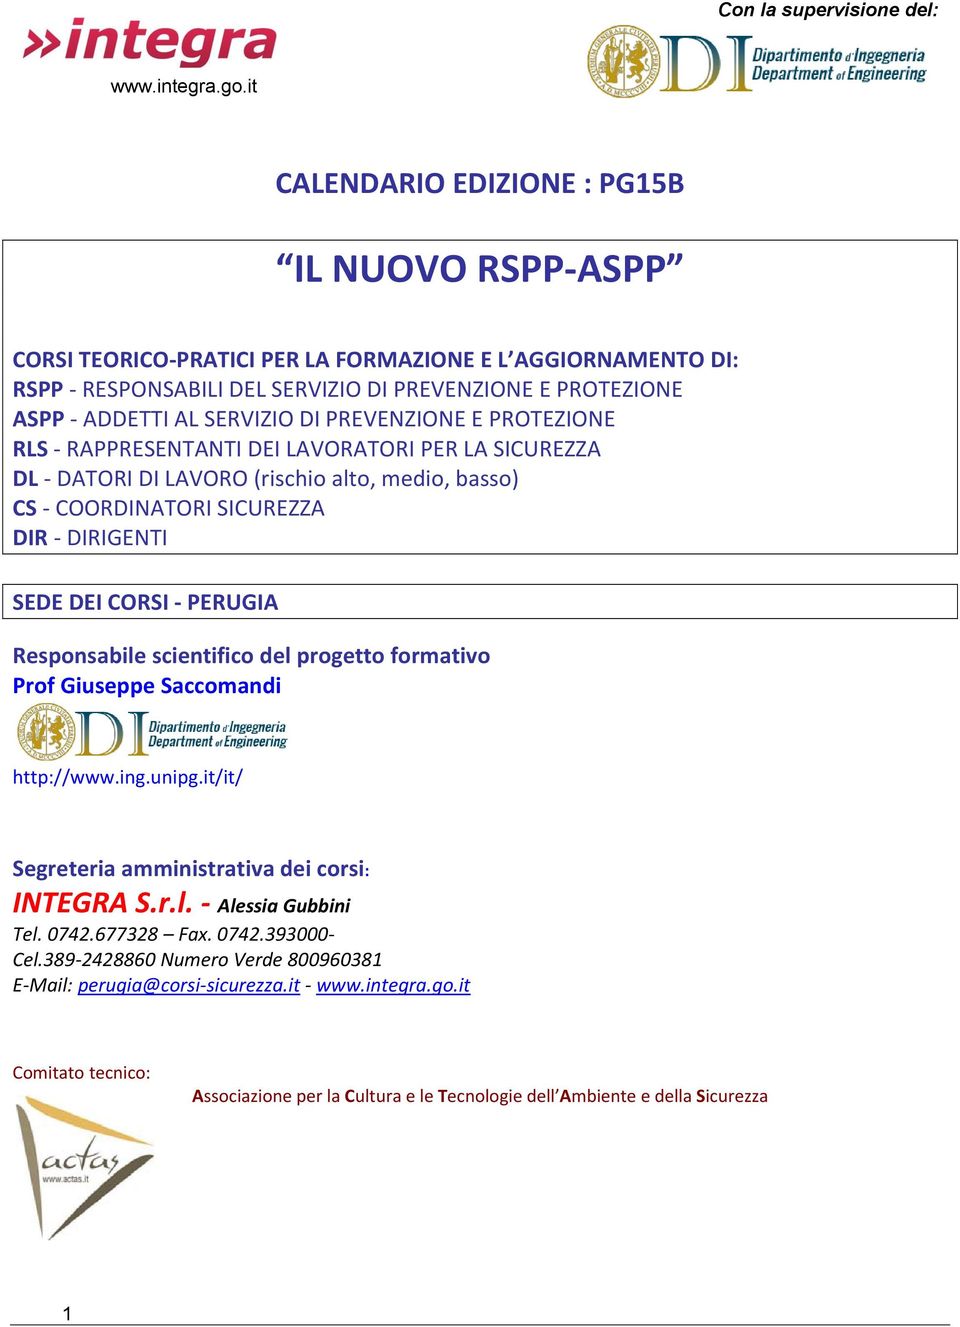 CORSI - Responsabile scientifico del progetto formativo Prof Giuseppe Saccomandi http://www.ing.unipg.it/it/ Segreteria amministrativa dei corsi: INTEGRA S.r.l. - Alessia Gubbini Tel. 0742.